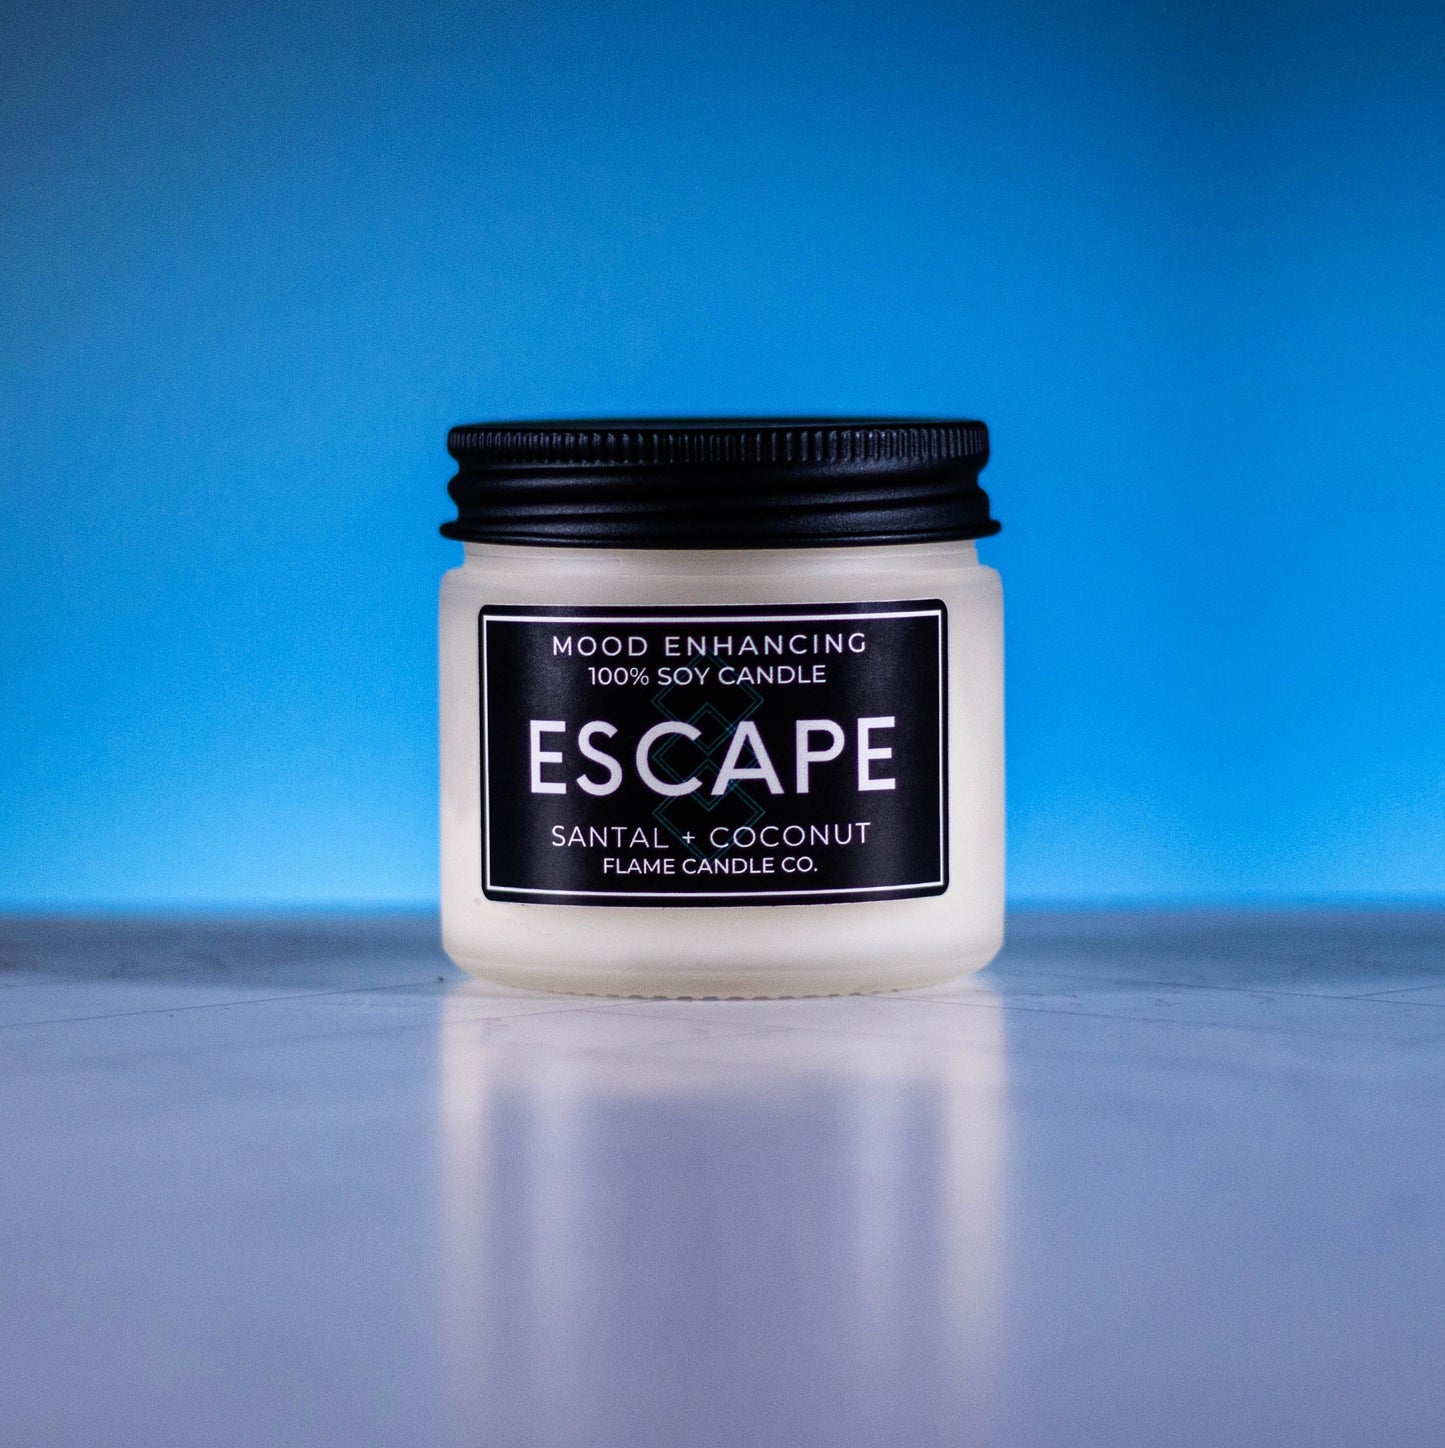 Escape - Santal + Coconut